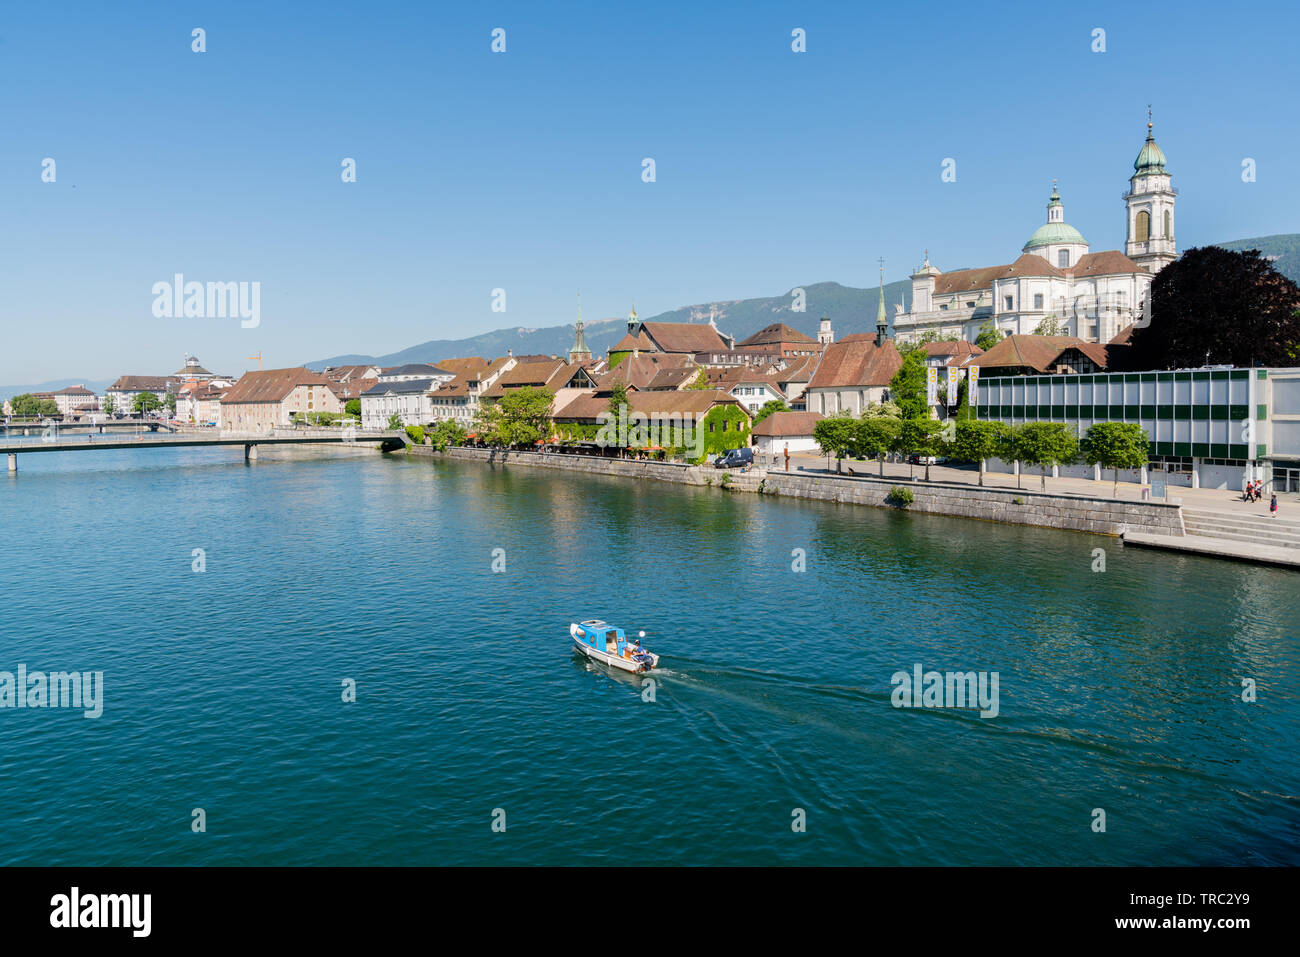 Solothurn, SO/Schweiz - vom 2. Juni 2019: Stadt Solothurn mit dem Fluss Aare panorama Stadtbild Blick auf die Altstadt und ein Fischerboot Überschrift Stockfoto